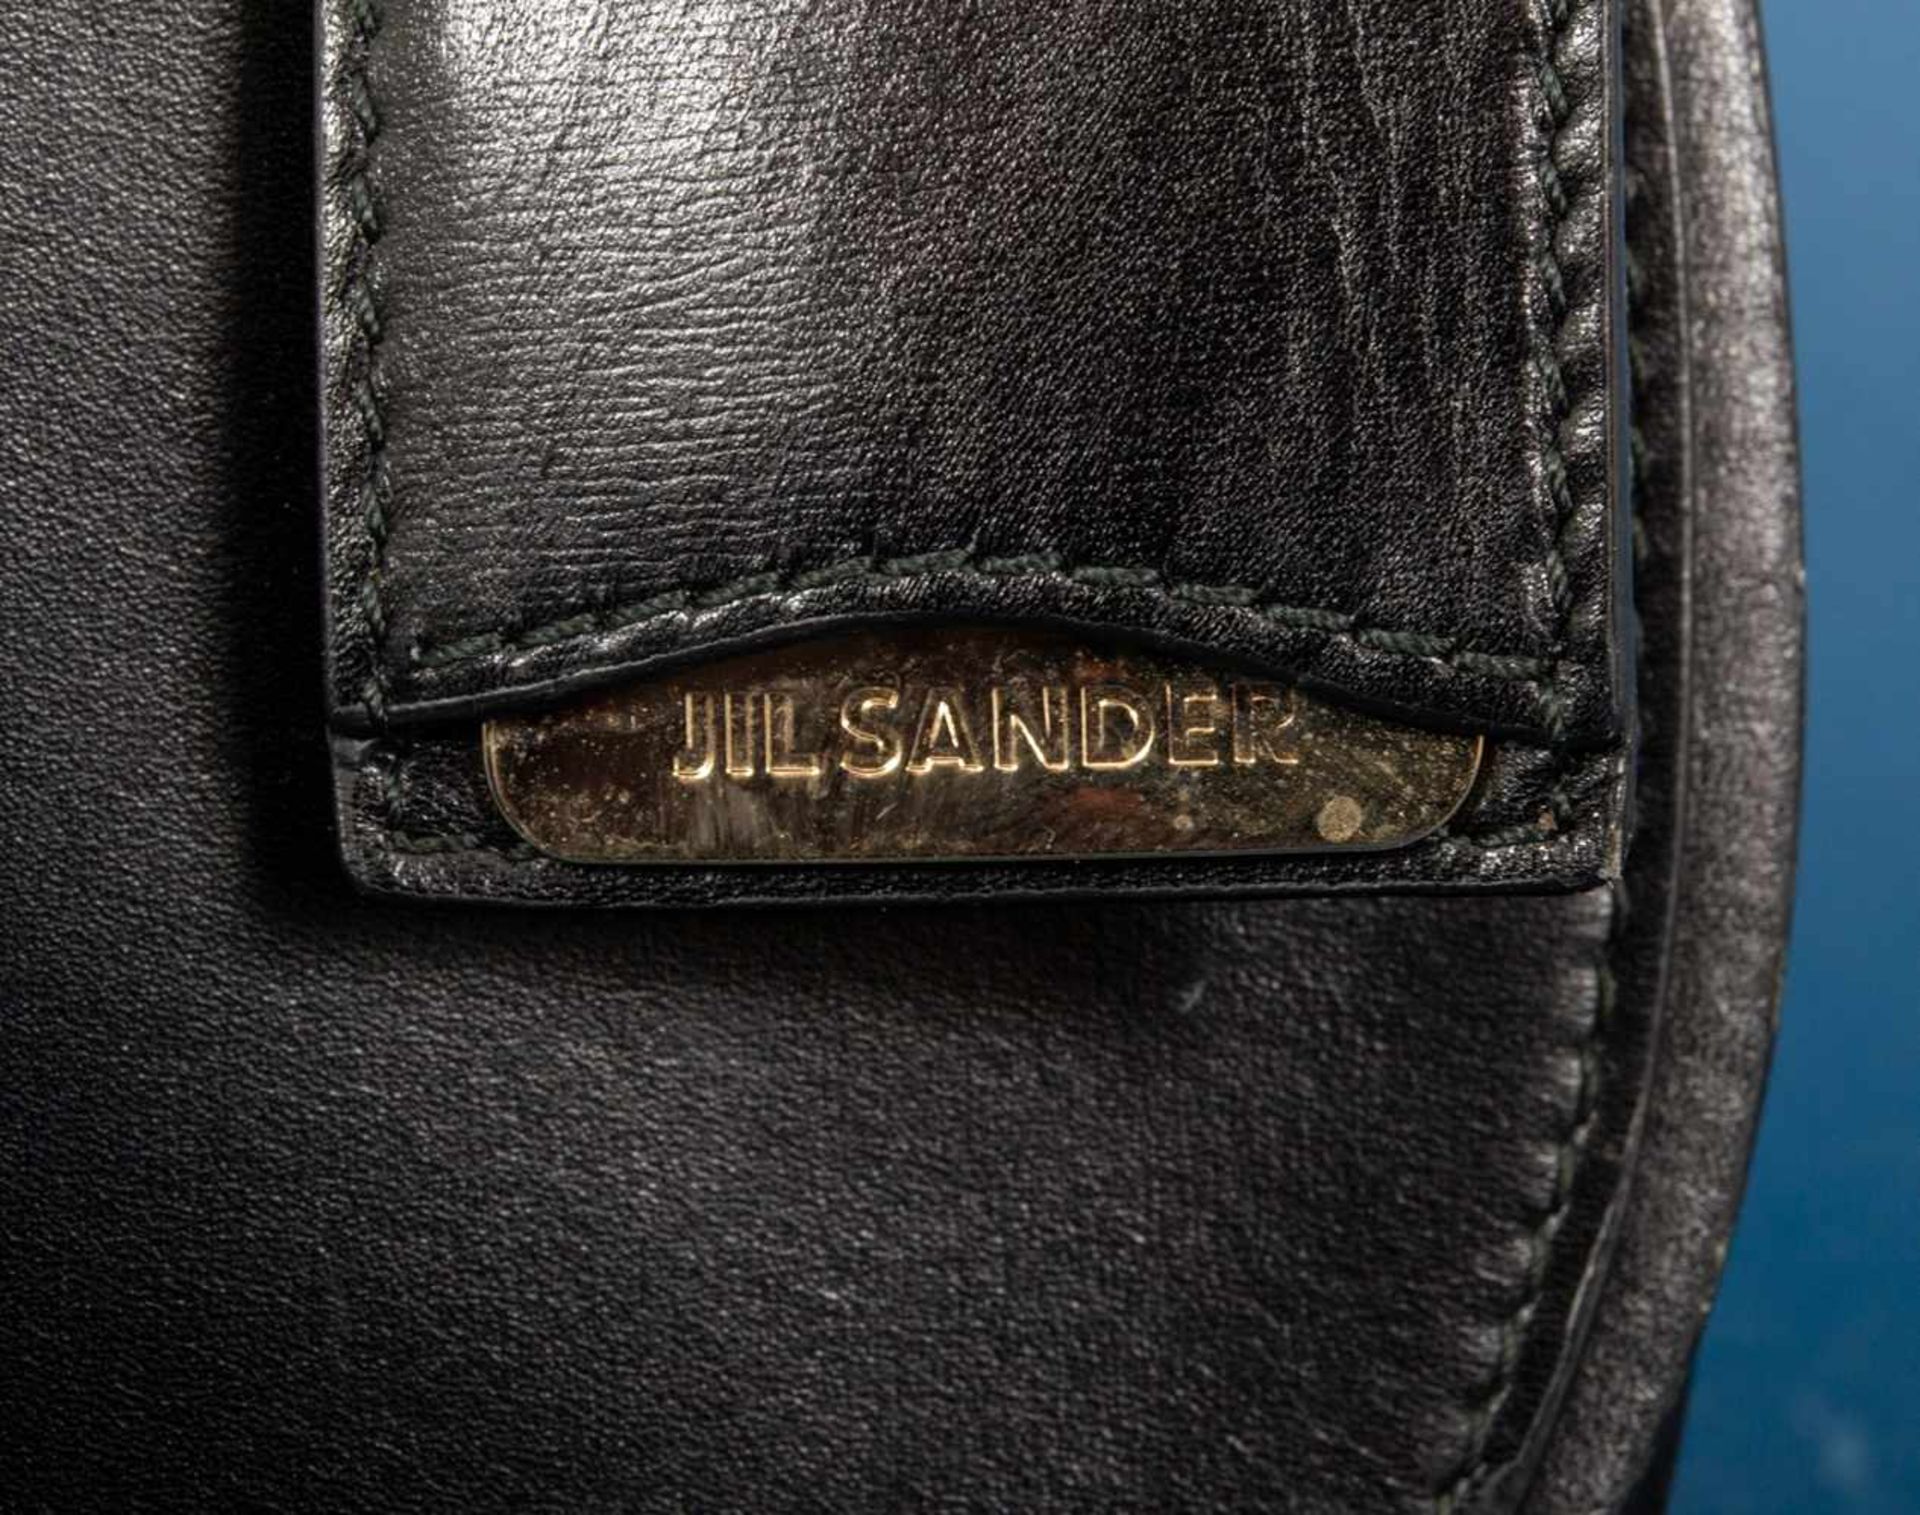 JIL SANDER - Damenhandtasche/Umhängetasche, schwarzes Leder mit polierten Messing-Beschlägen/ - Image 2 of 9